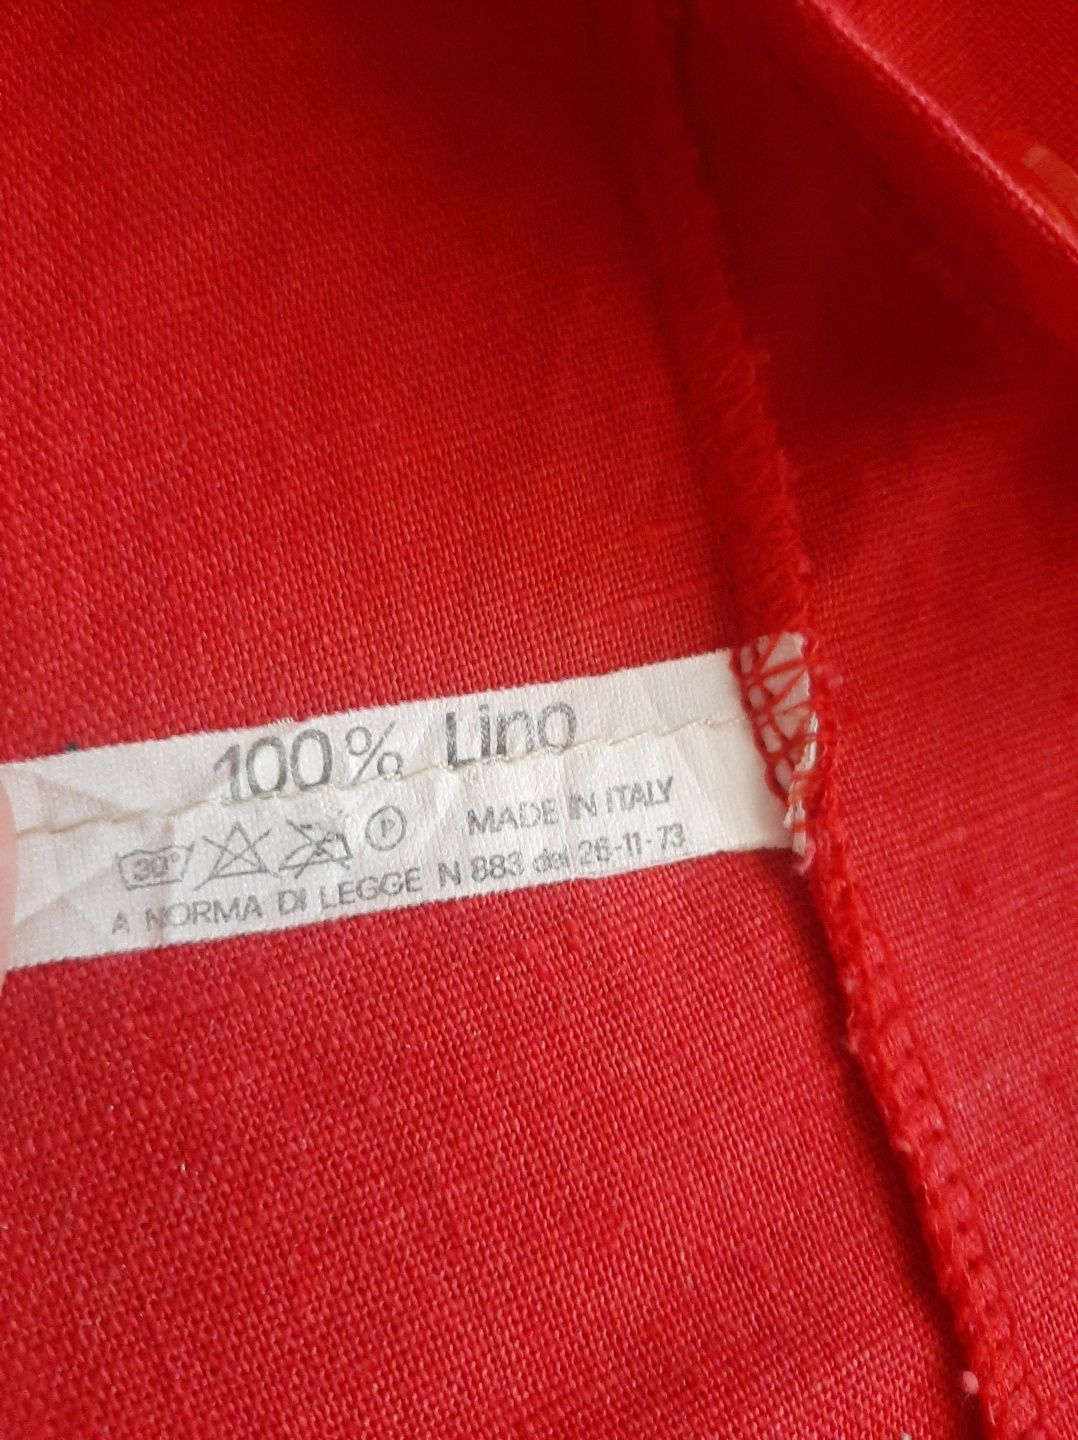 Рубашка красная лён, итальянская, размер М или 44-46